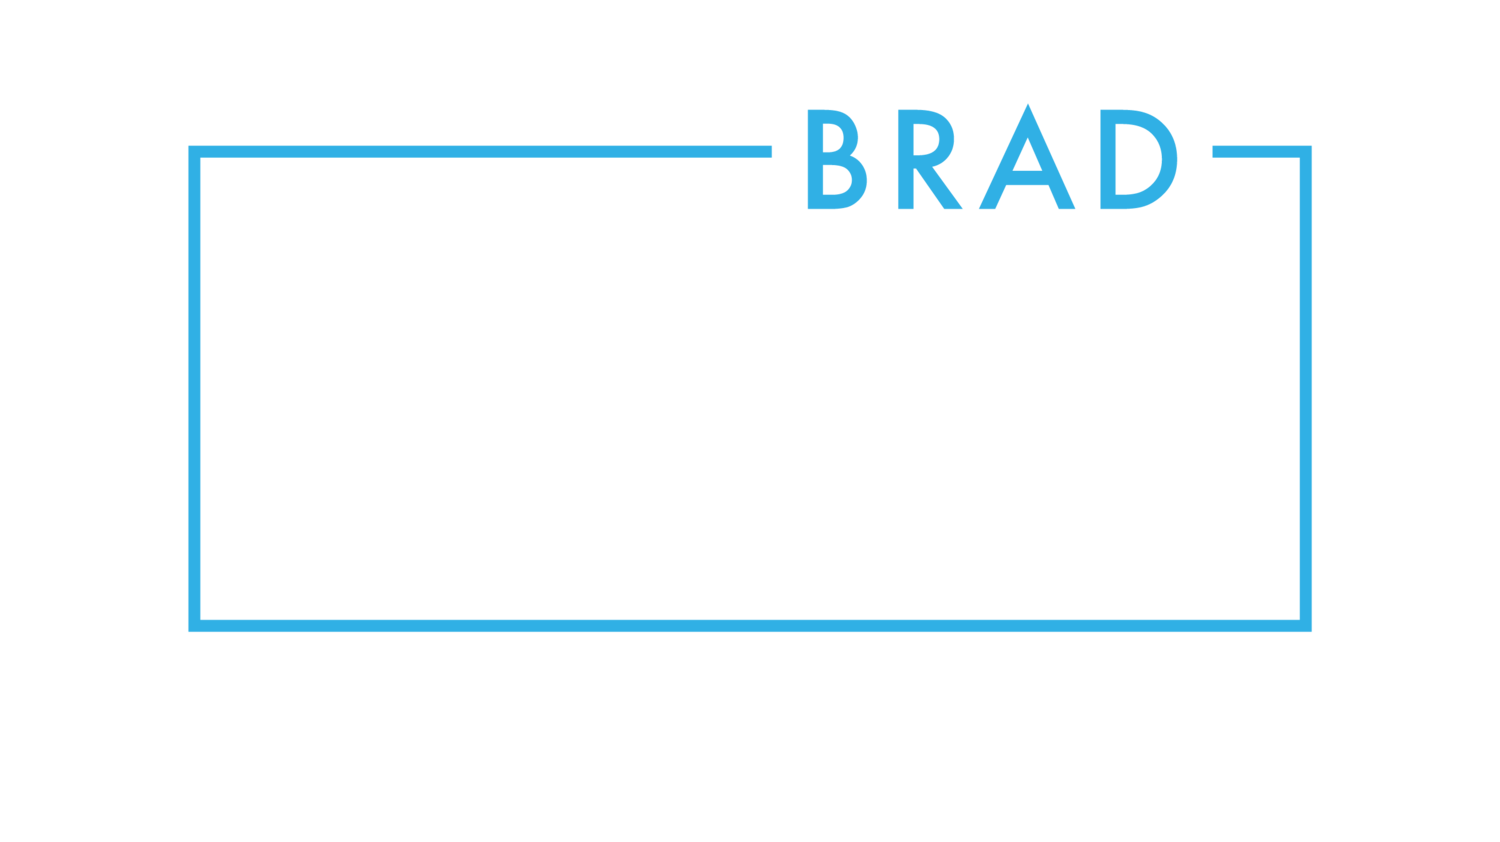 Brad Gillis Wicomico County Council